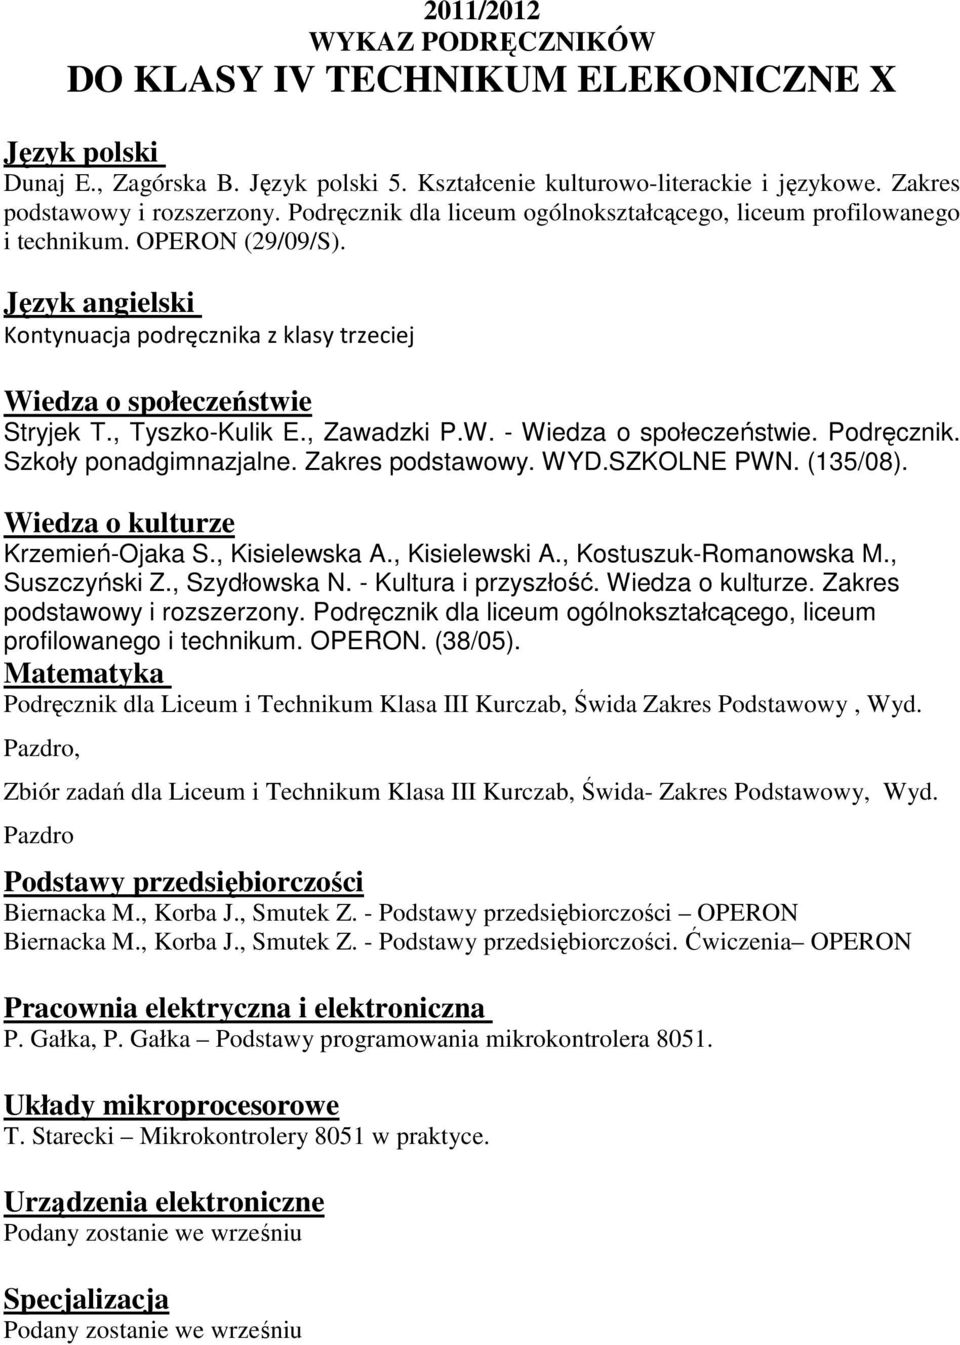 Podręcznik dla liceum ogólnokształcącego, liceum profilowanego i technikum. OPERON. (38/05)., Podstawy przedsiębiorczości Biernacka M., Korba J., Smutek Z.